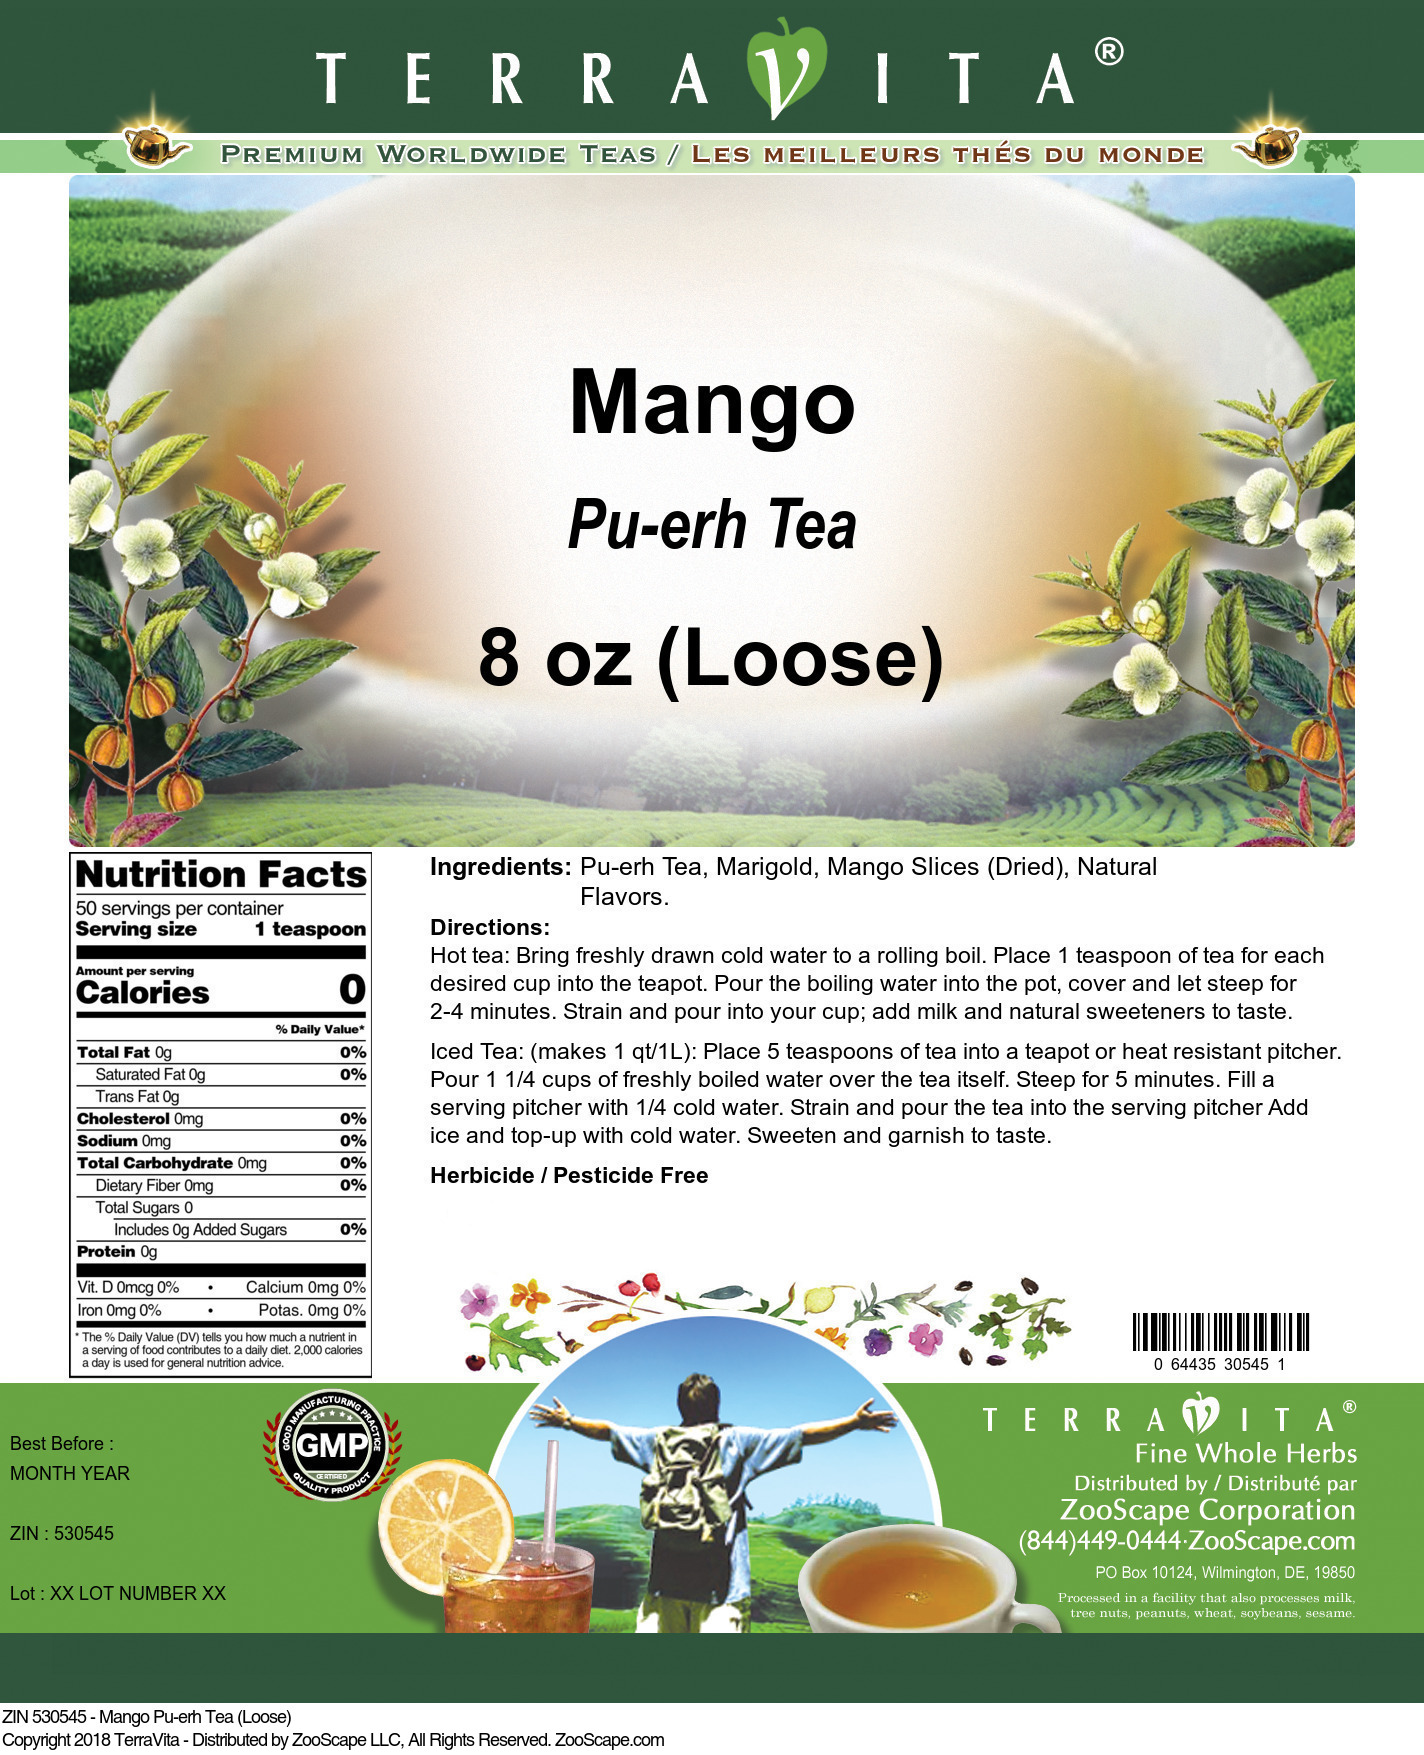 Mango Pu-erh Tea (Loose) - Label